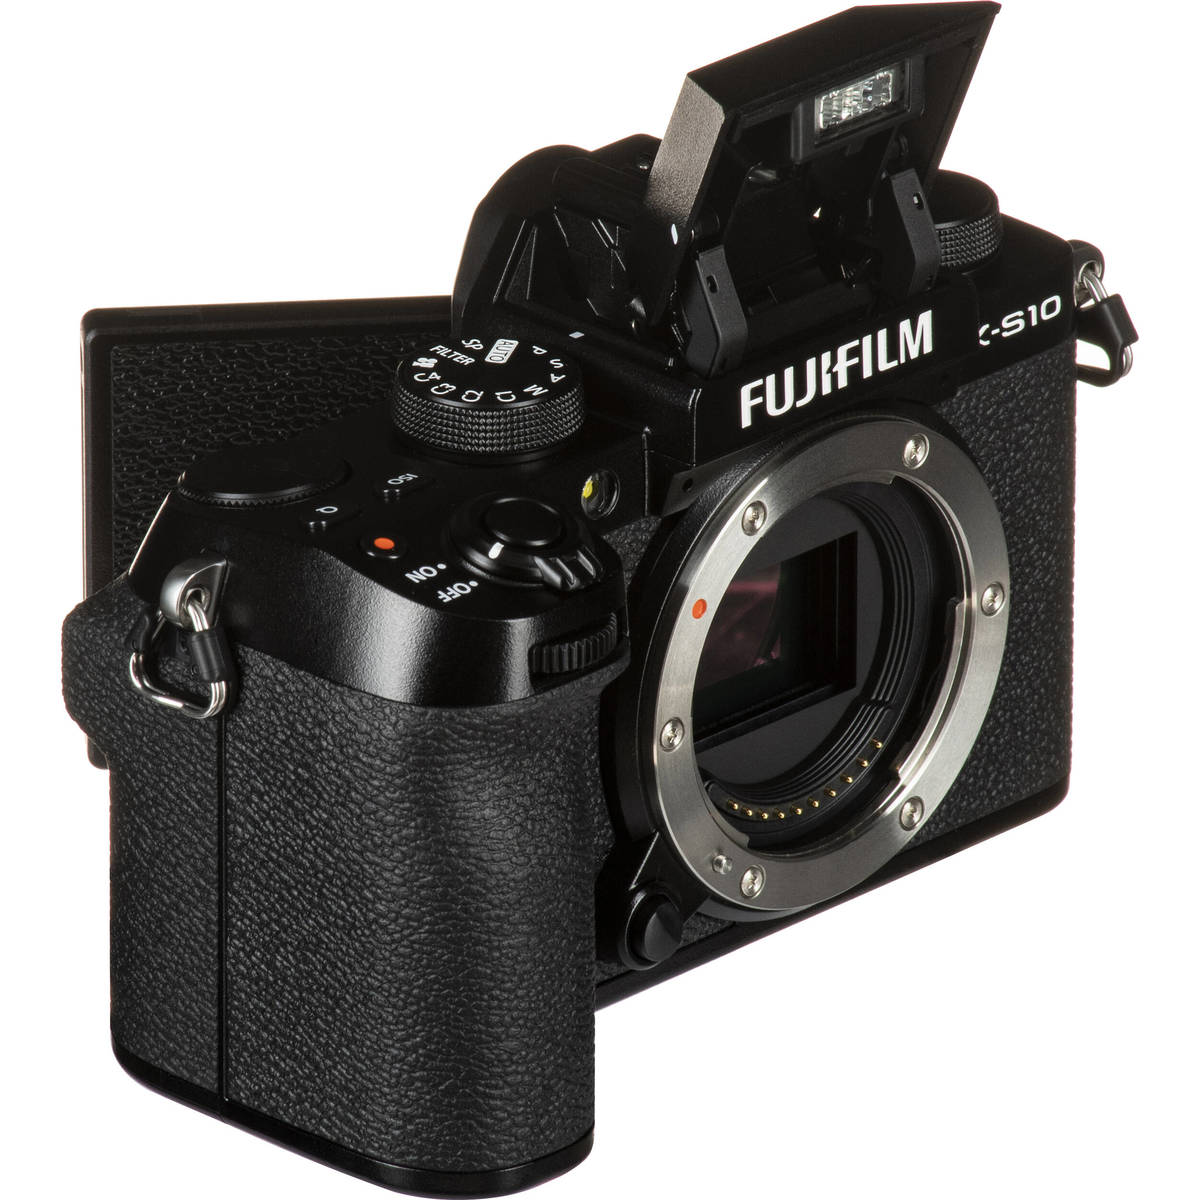 9. Fujifilm X-S10 kit (15-45)